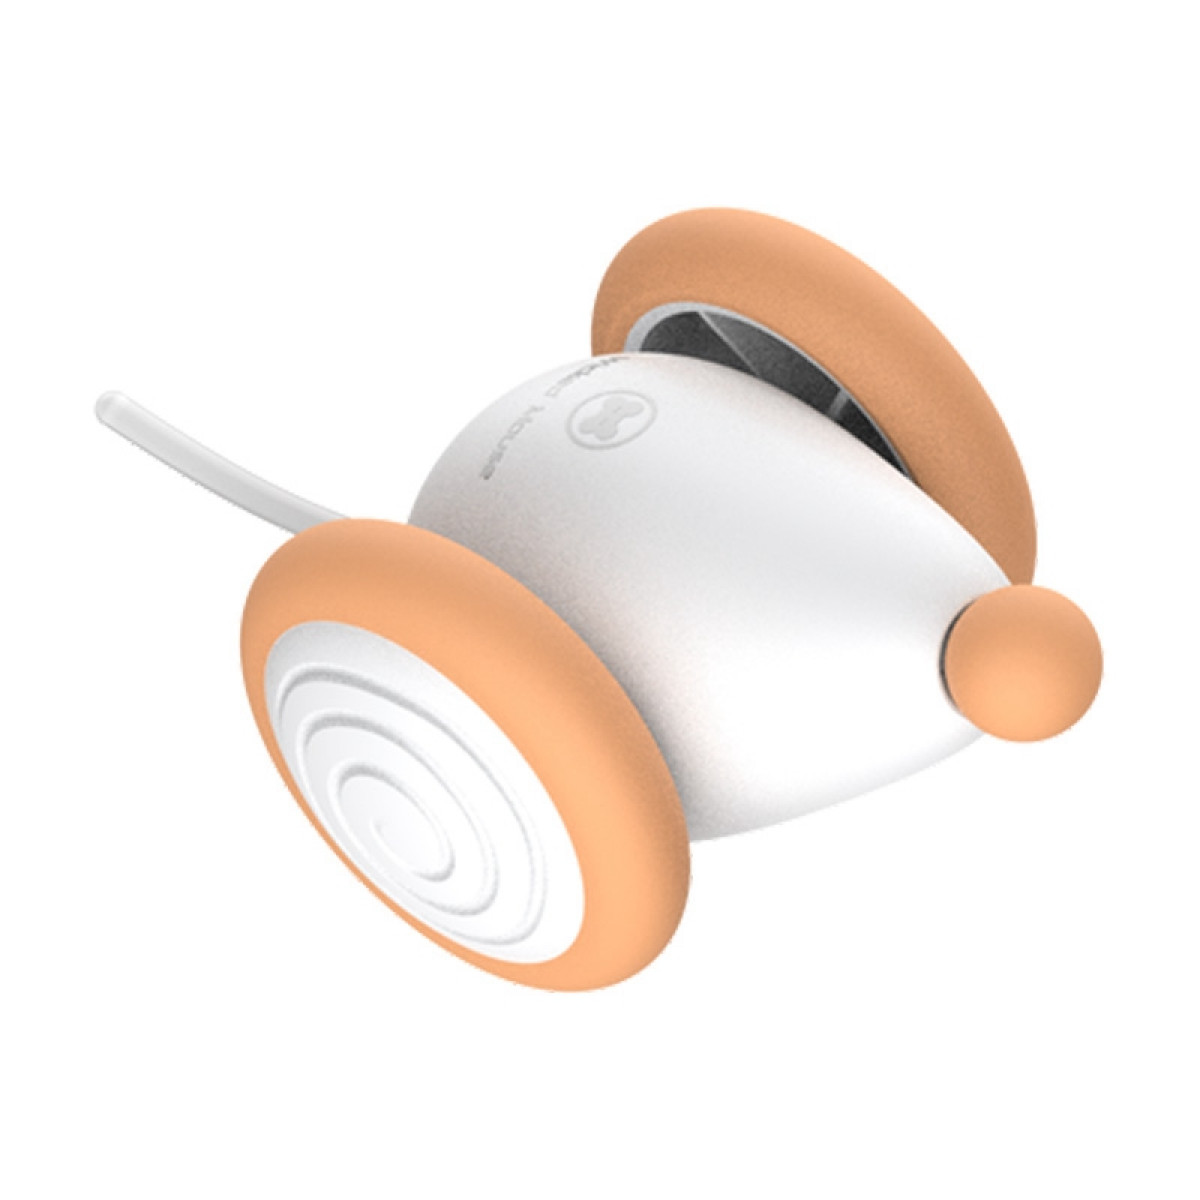 Interaktives für Katze USB-Aufladung INF Haustier-Spielzeug Spielzeug Orange/Weiß Maus